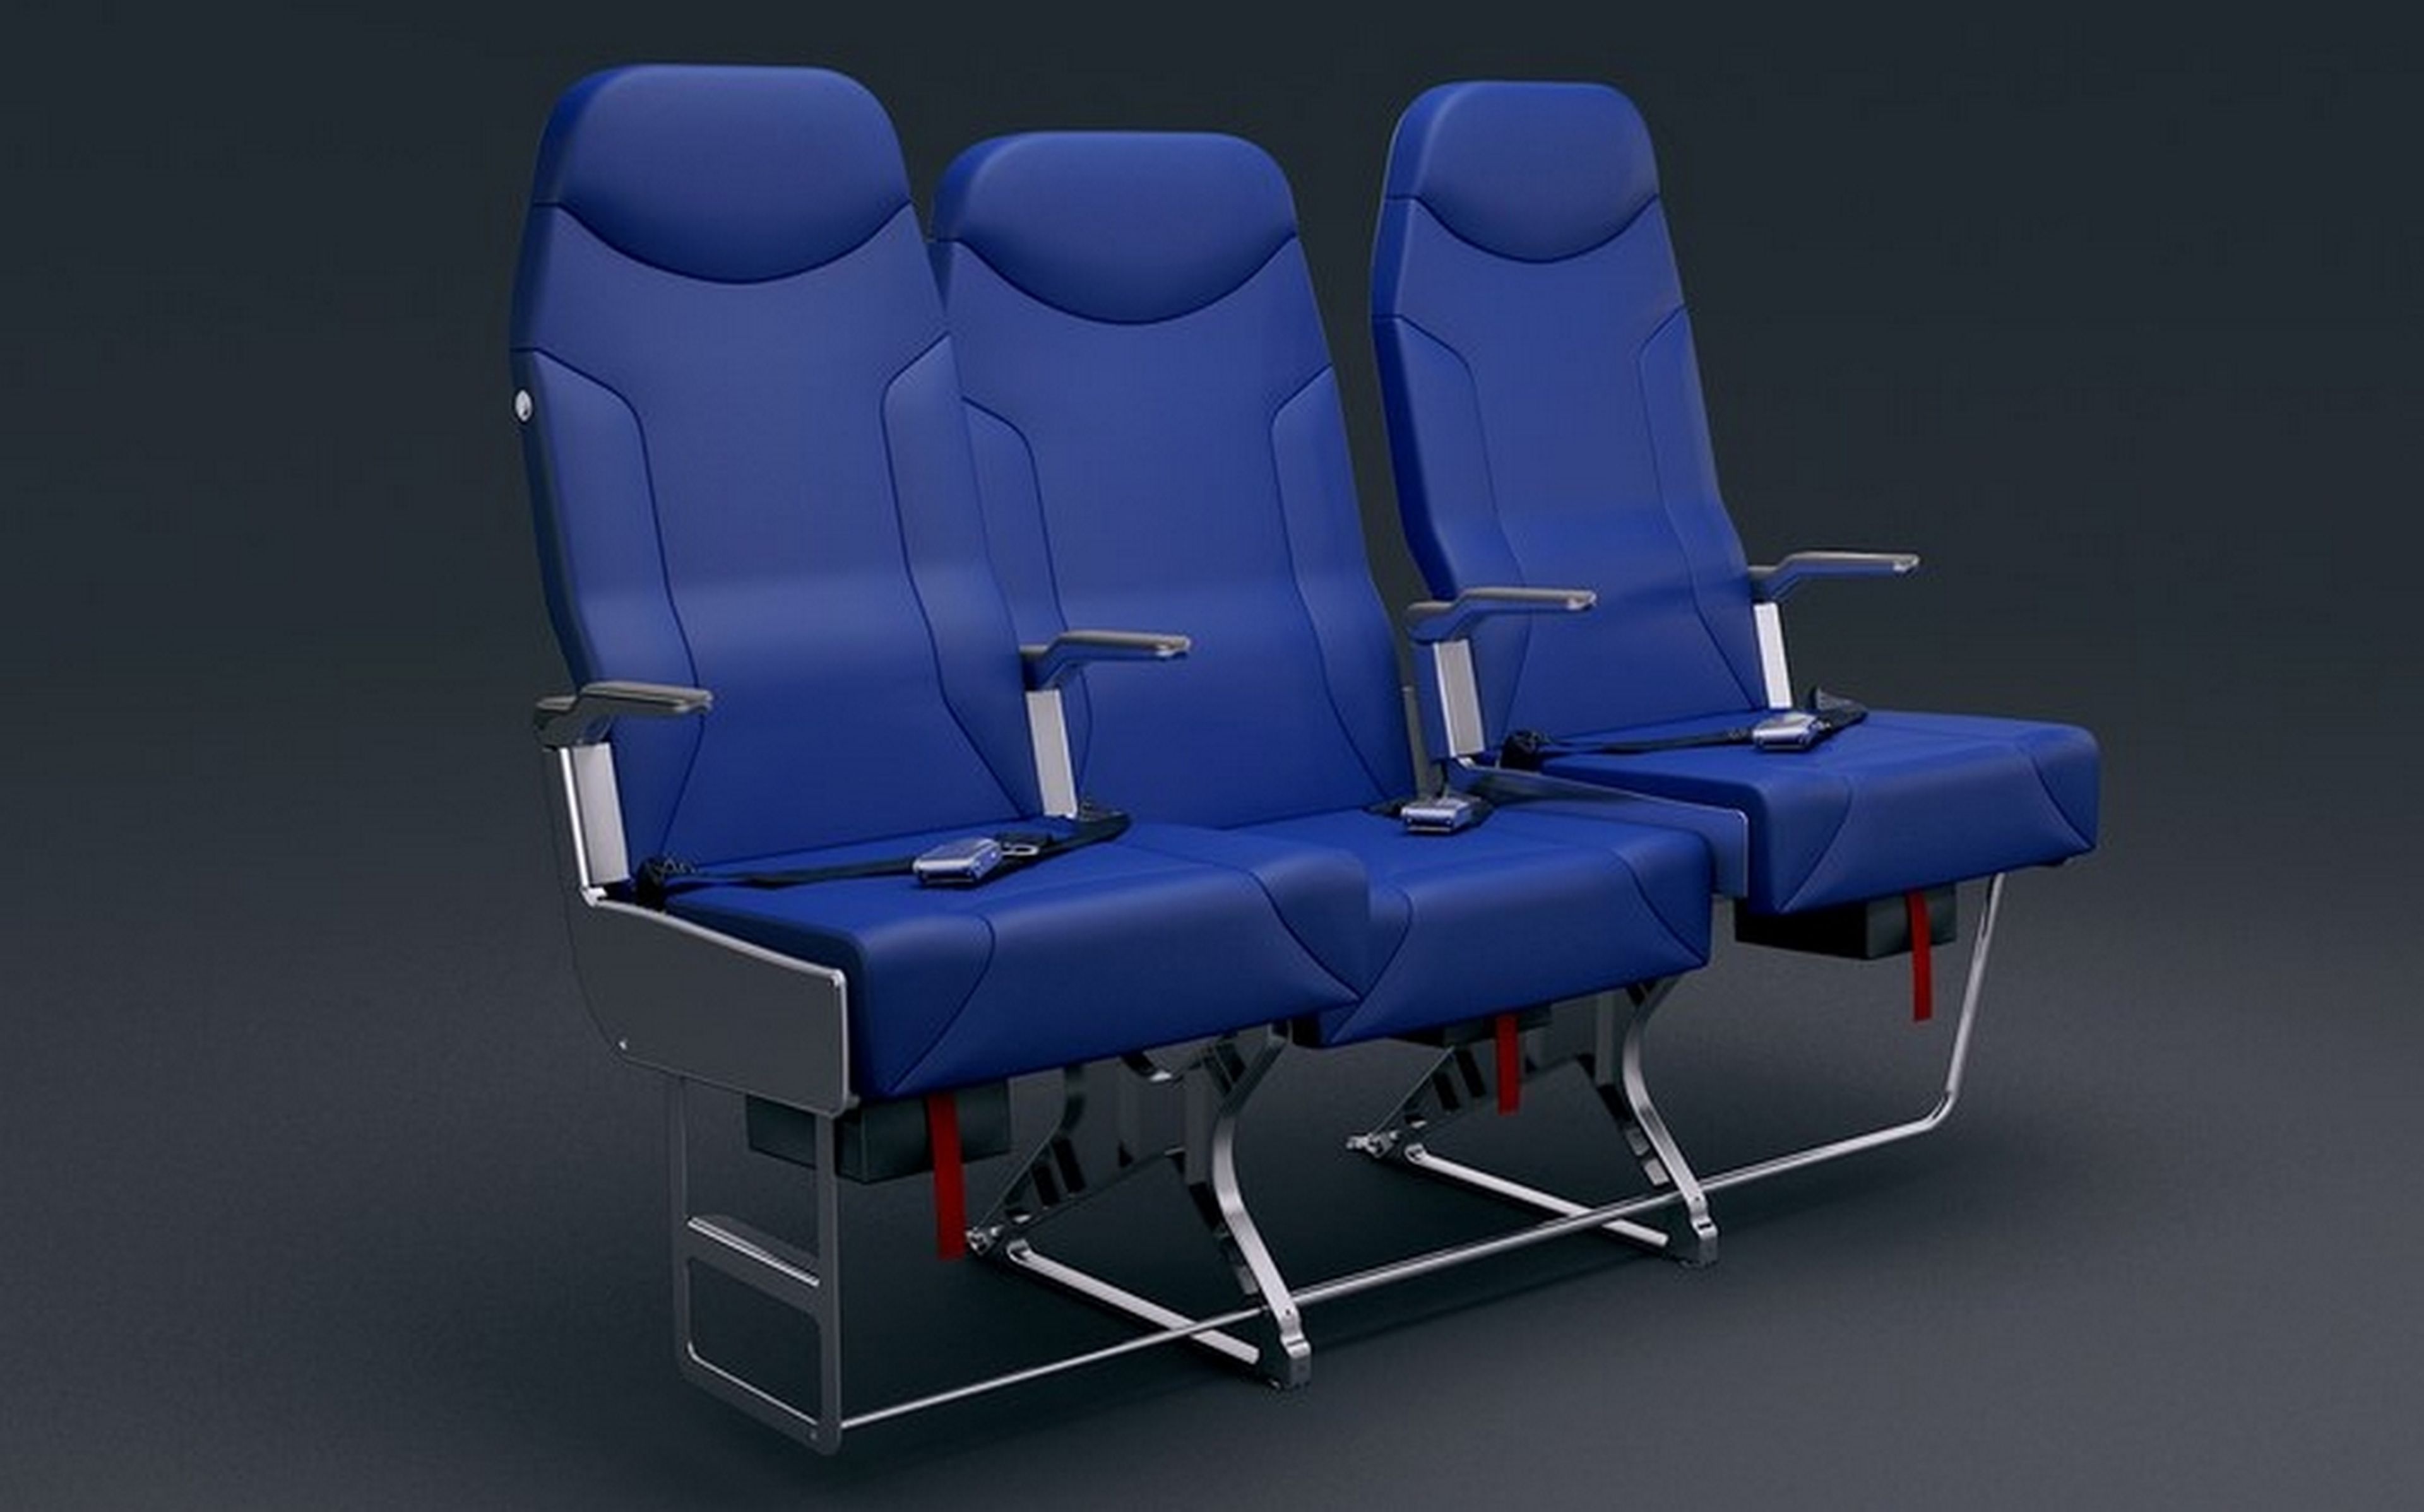 Без пассажирских сидений. Самолетные кресла Recaro. Кресло пилота а320. К12 -7550 кресла авиационные. Пассажирское кресло: 172.7509.510.